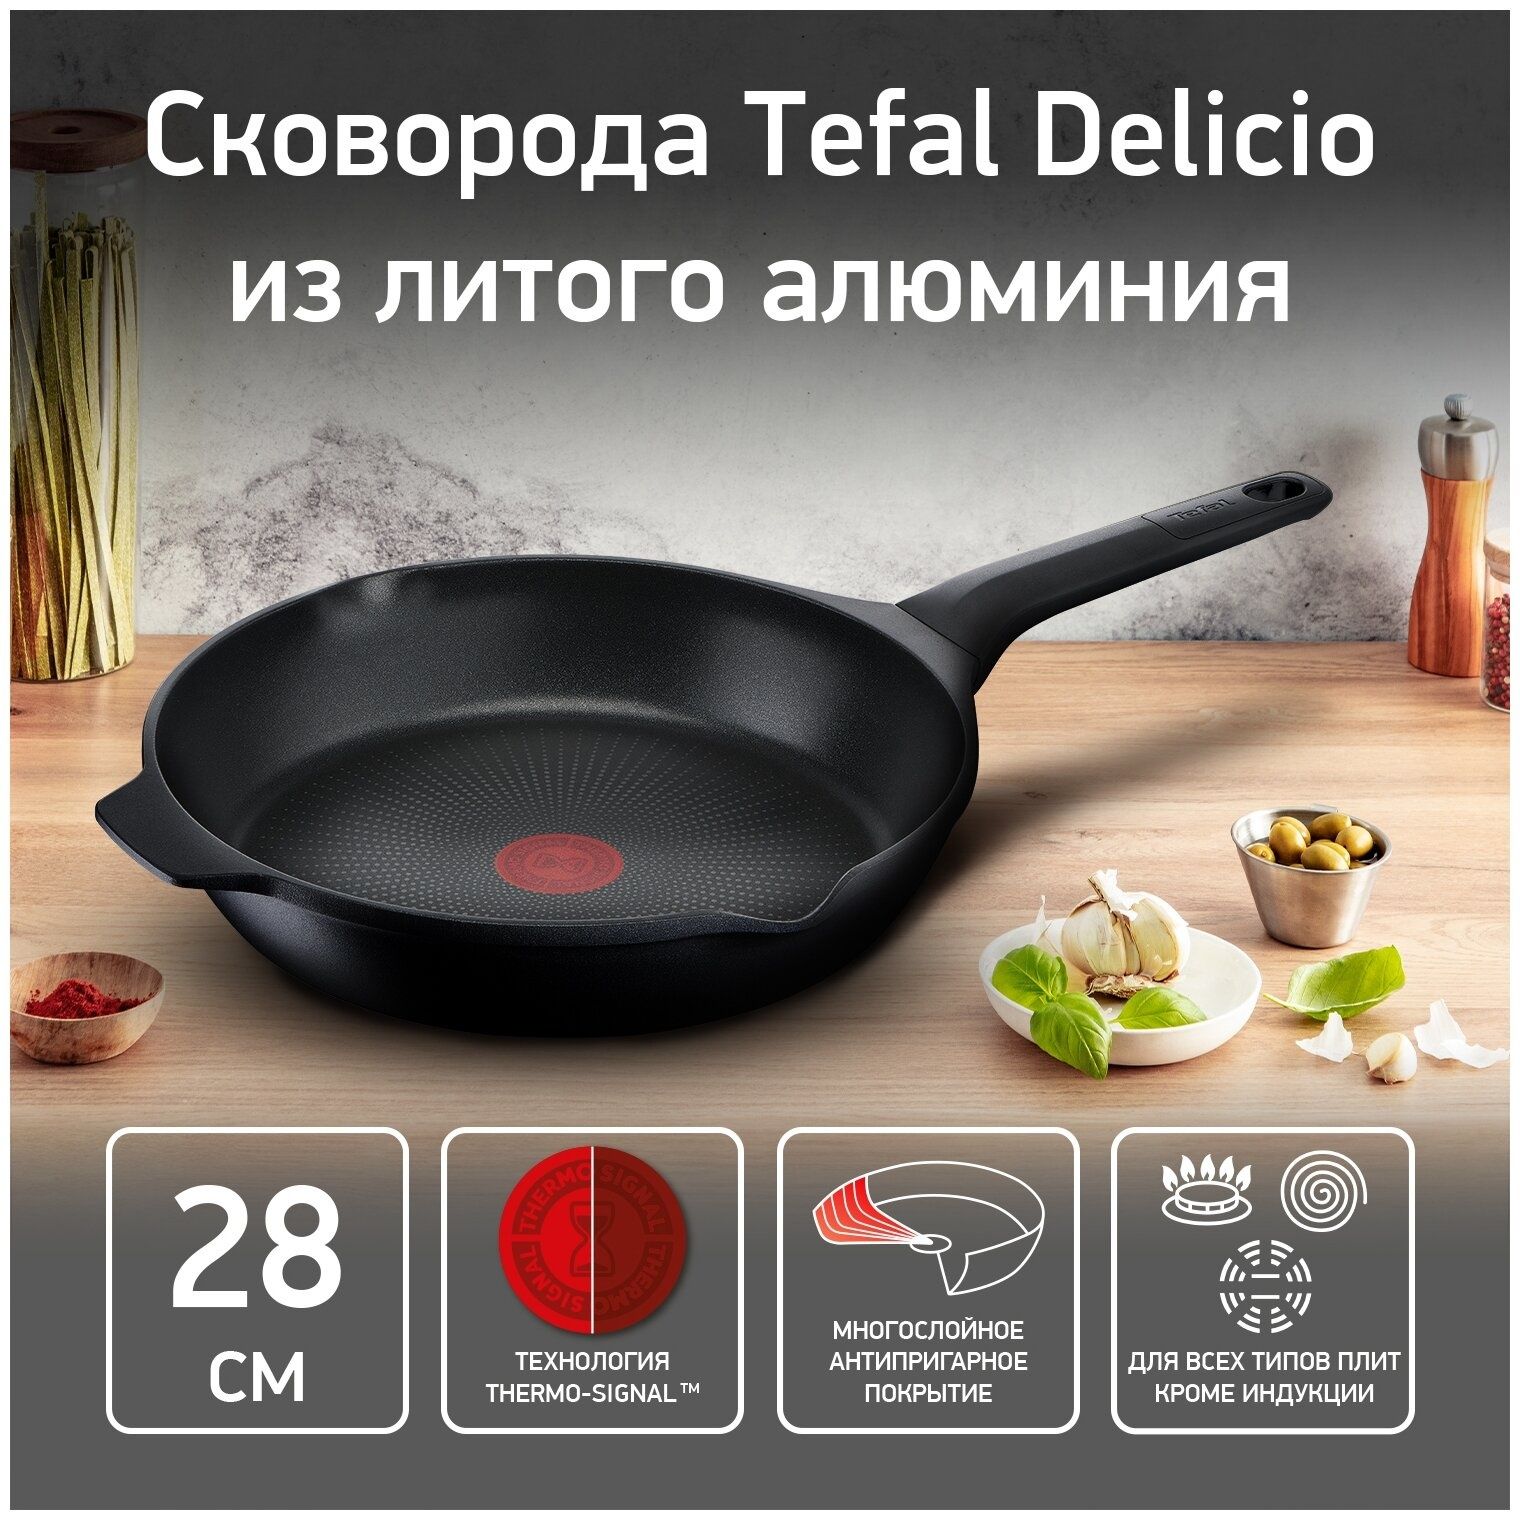 Сковорода TEFAL Delicio 28cm